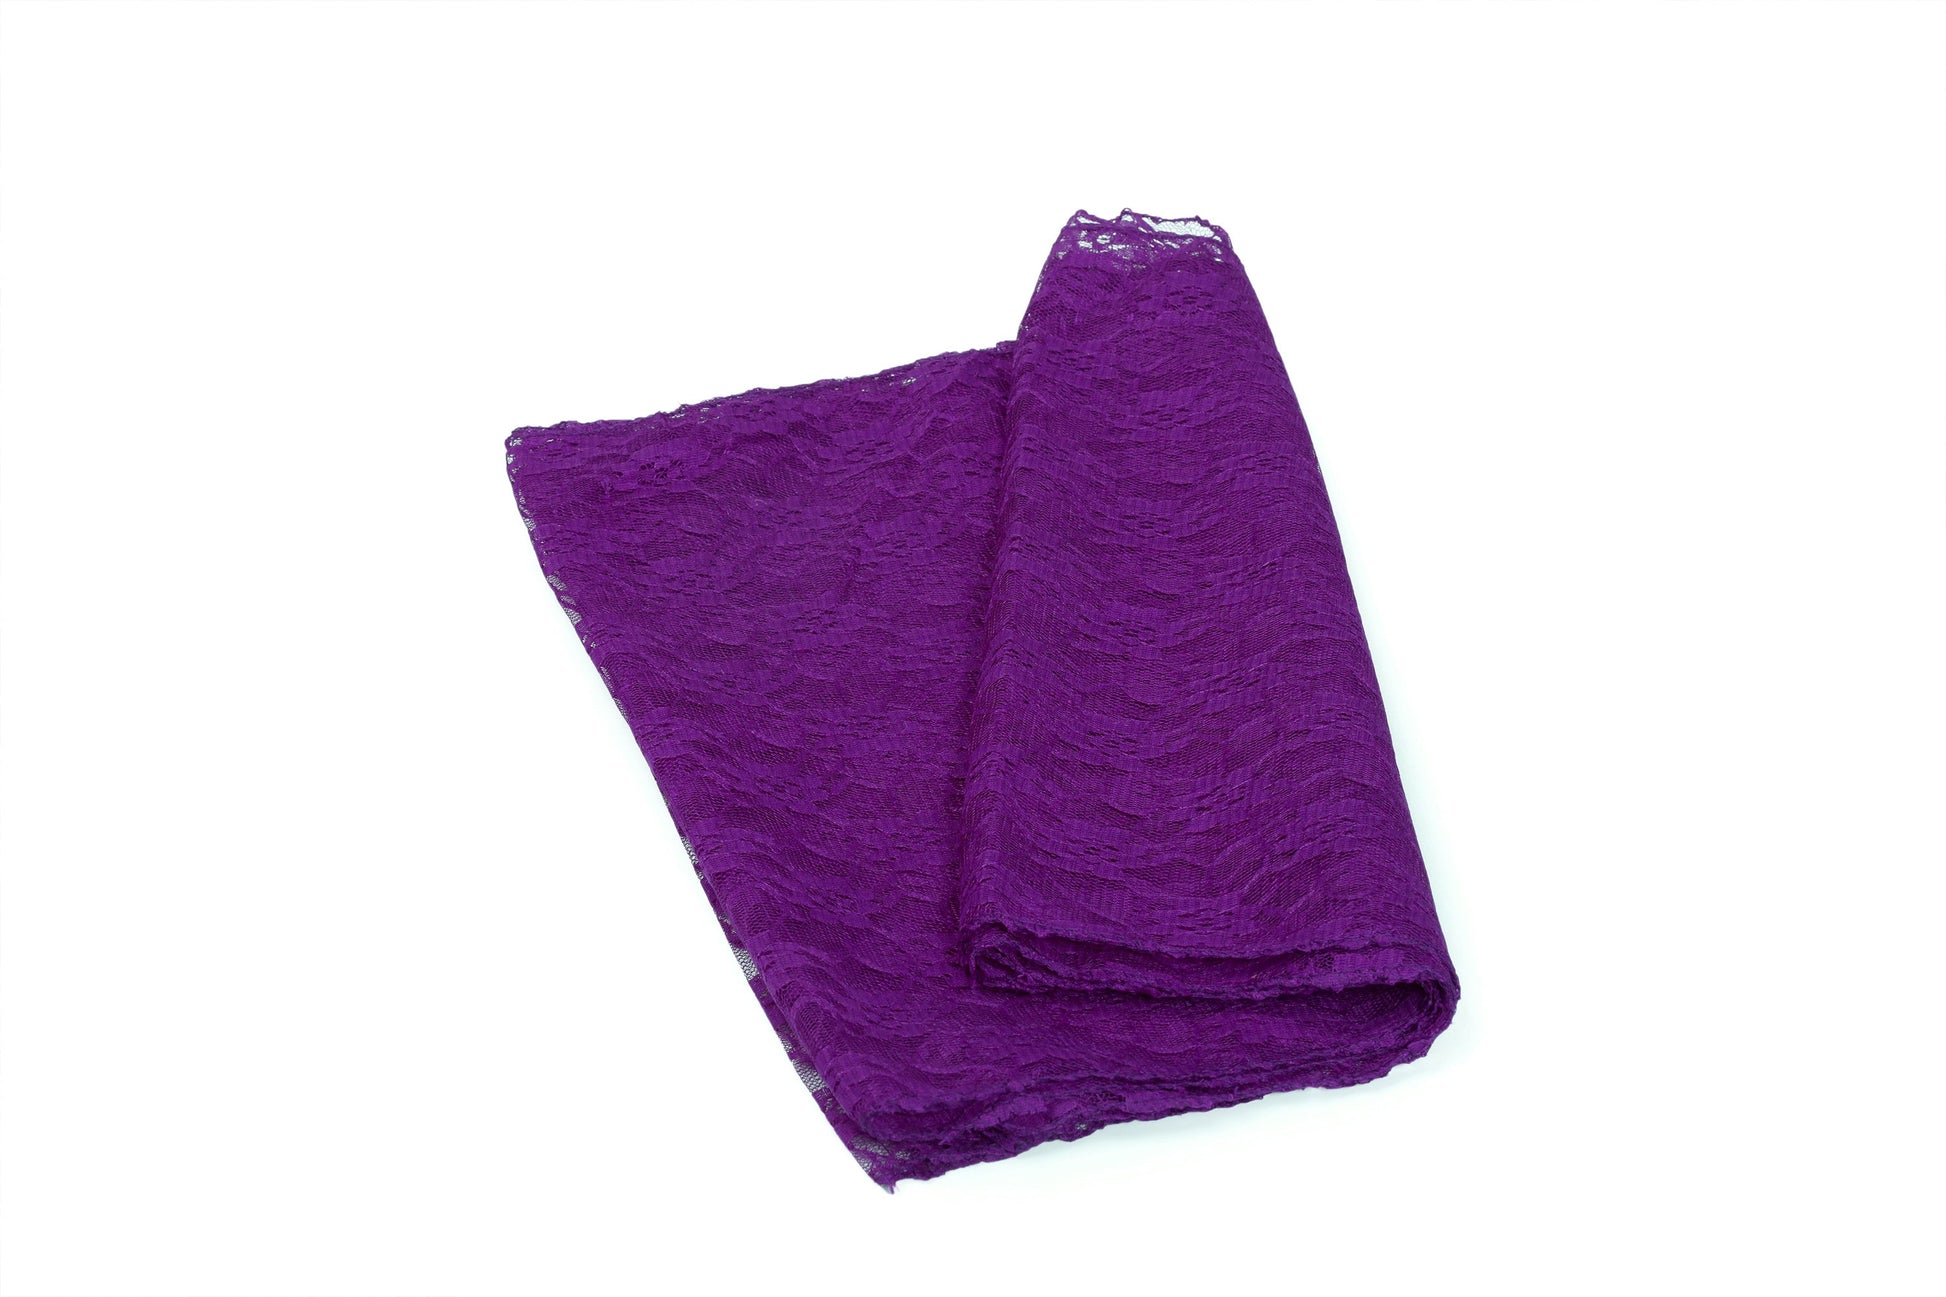 Cadbury Purple,284cb6e0-9980-498b-a2e7-4e02723989b6